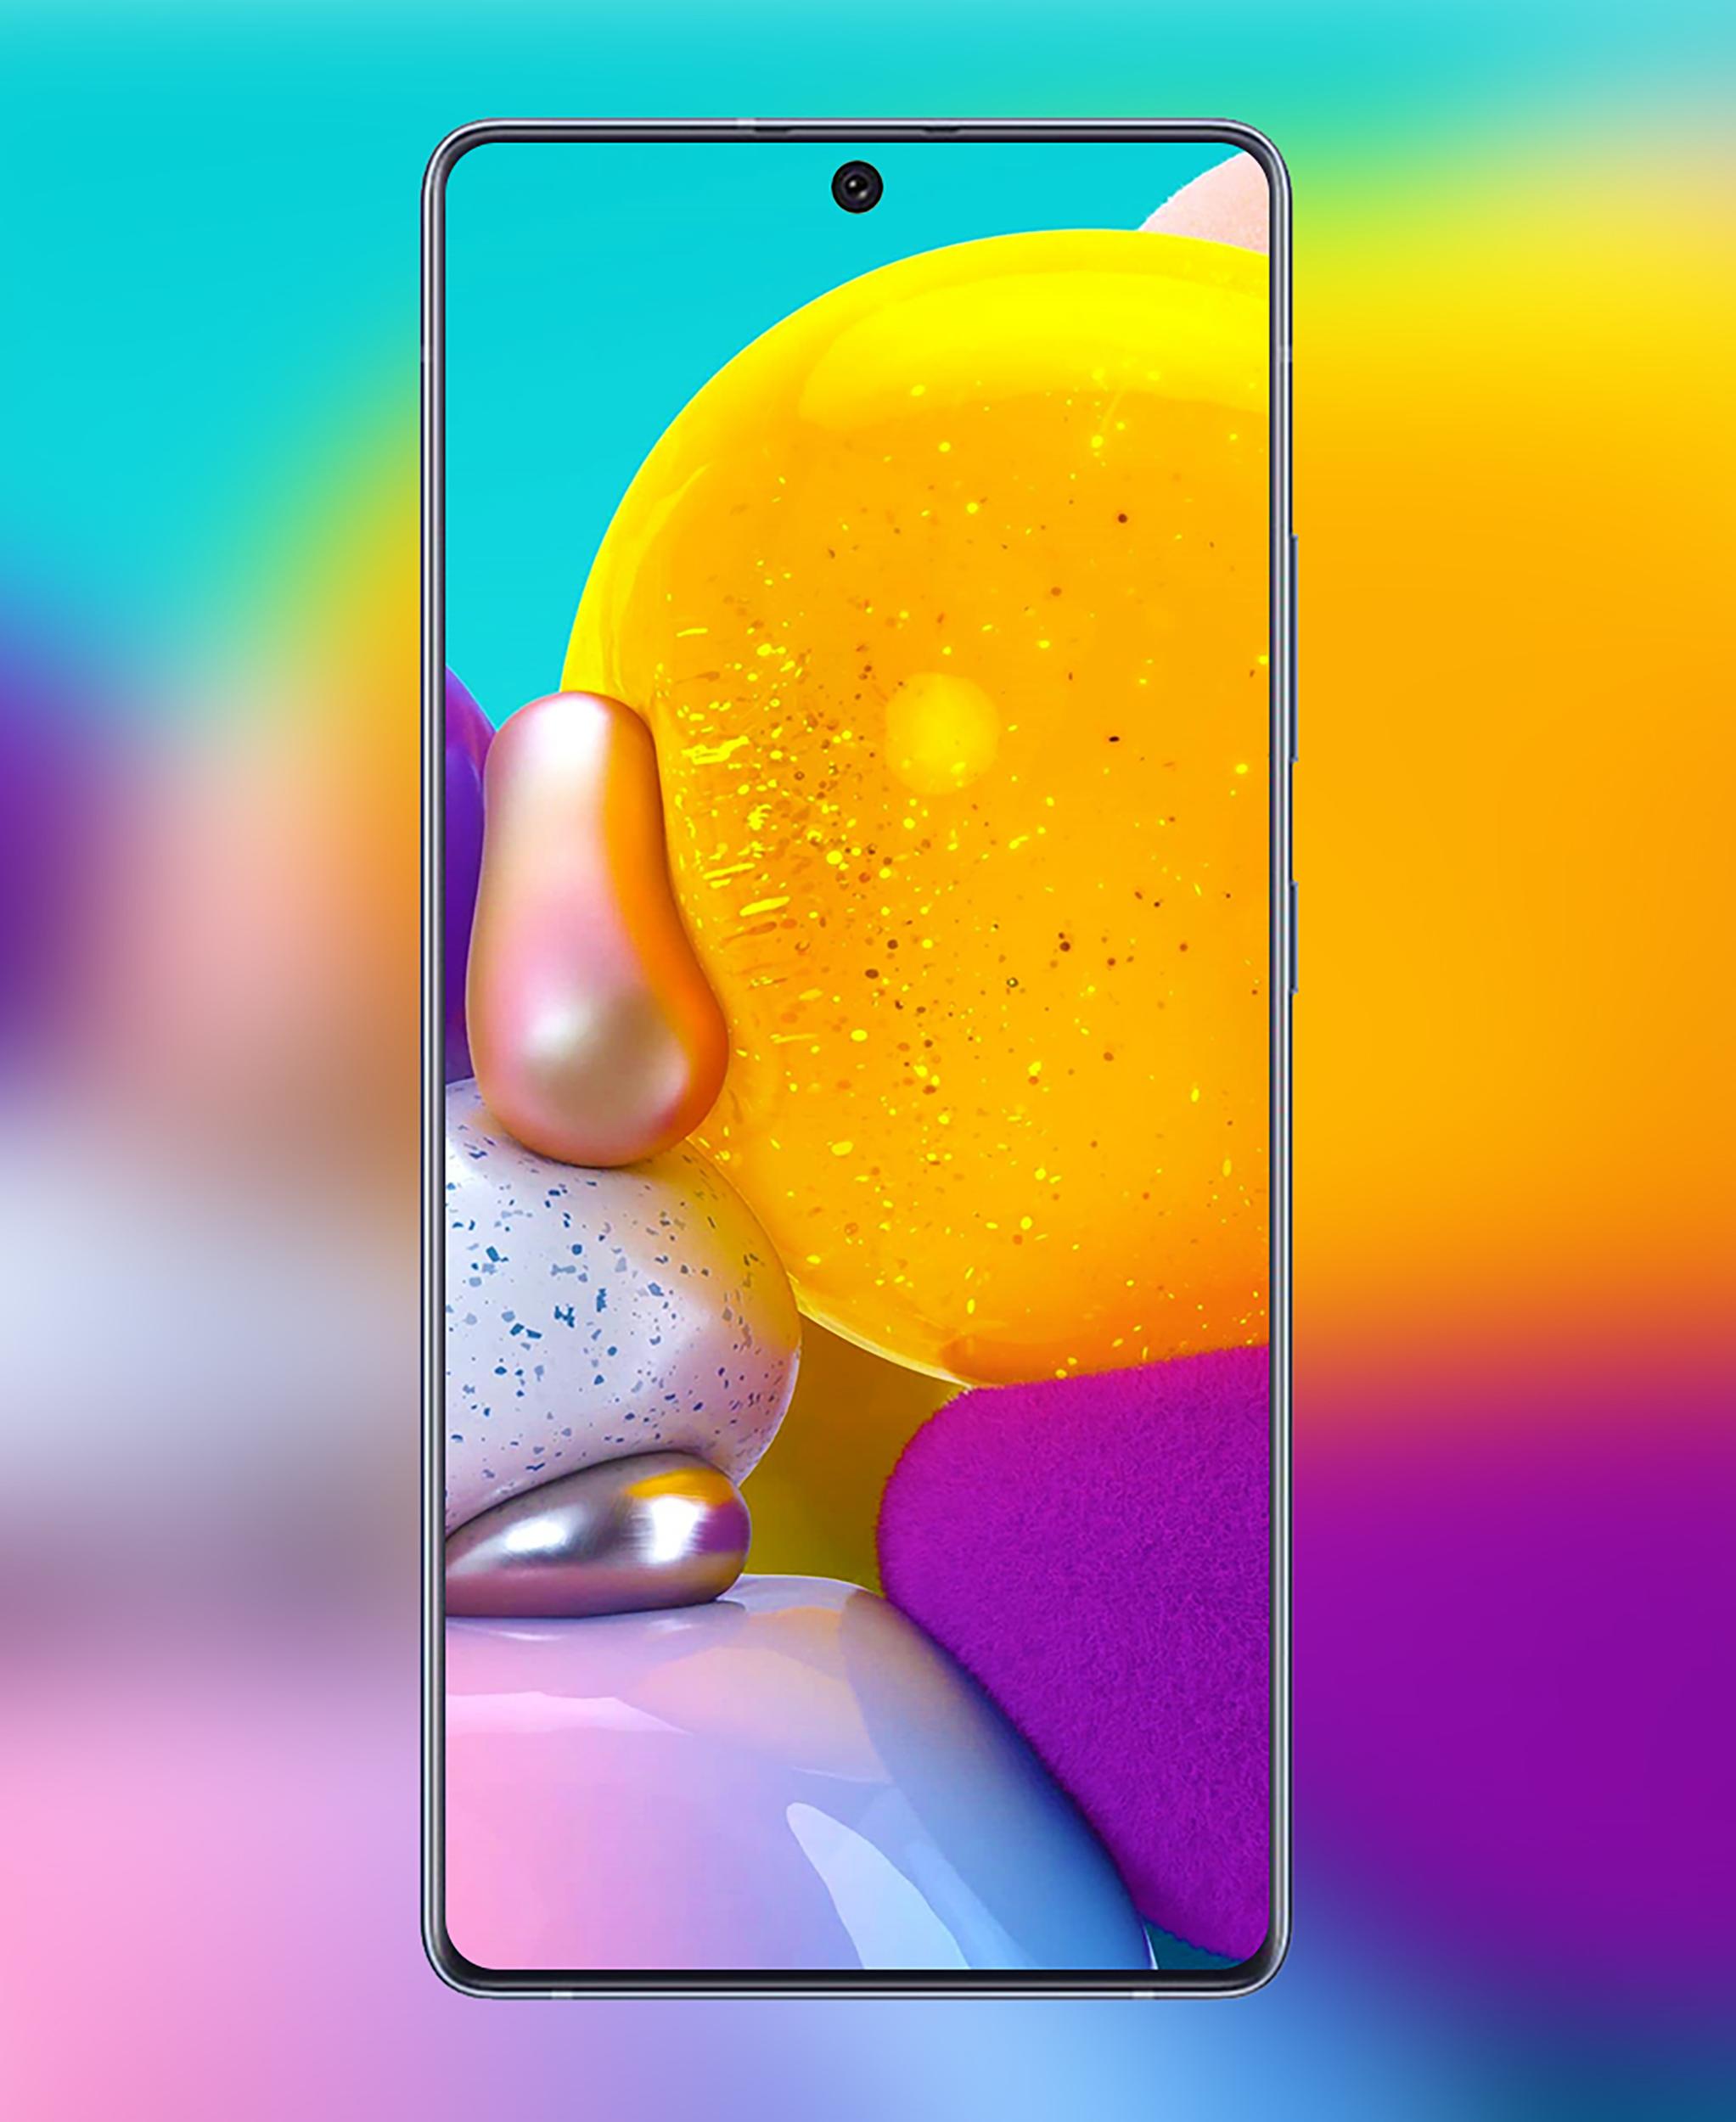 Samsung Galaxy A51 Built-In Stock Wallpapers: Khám phá những bức hình nền độc đáo và đẹp mắt với Samsung Galaxy A51 Built-In Stock Wallpapers. Sử dụng chúng để trang trí cho điện thoại của bạn và tận hưởng màn hình rực rỡ và sắc nét.